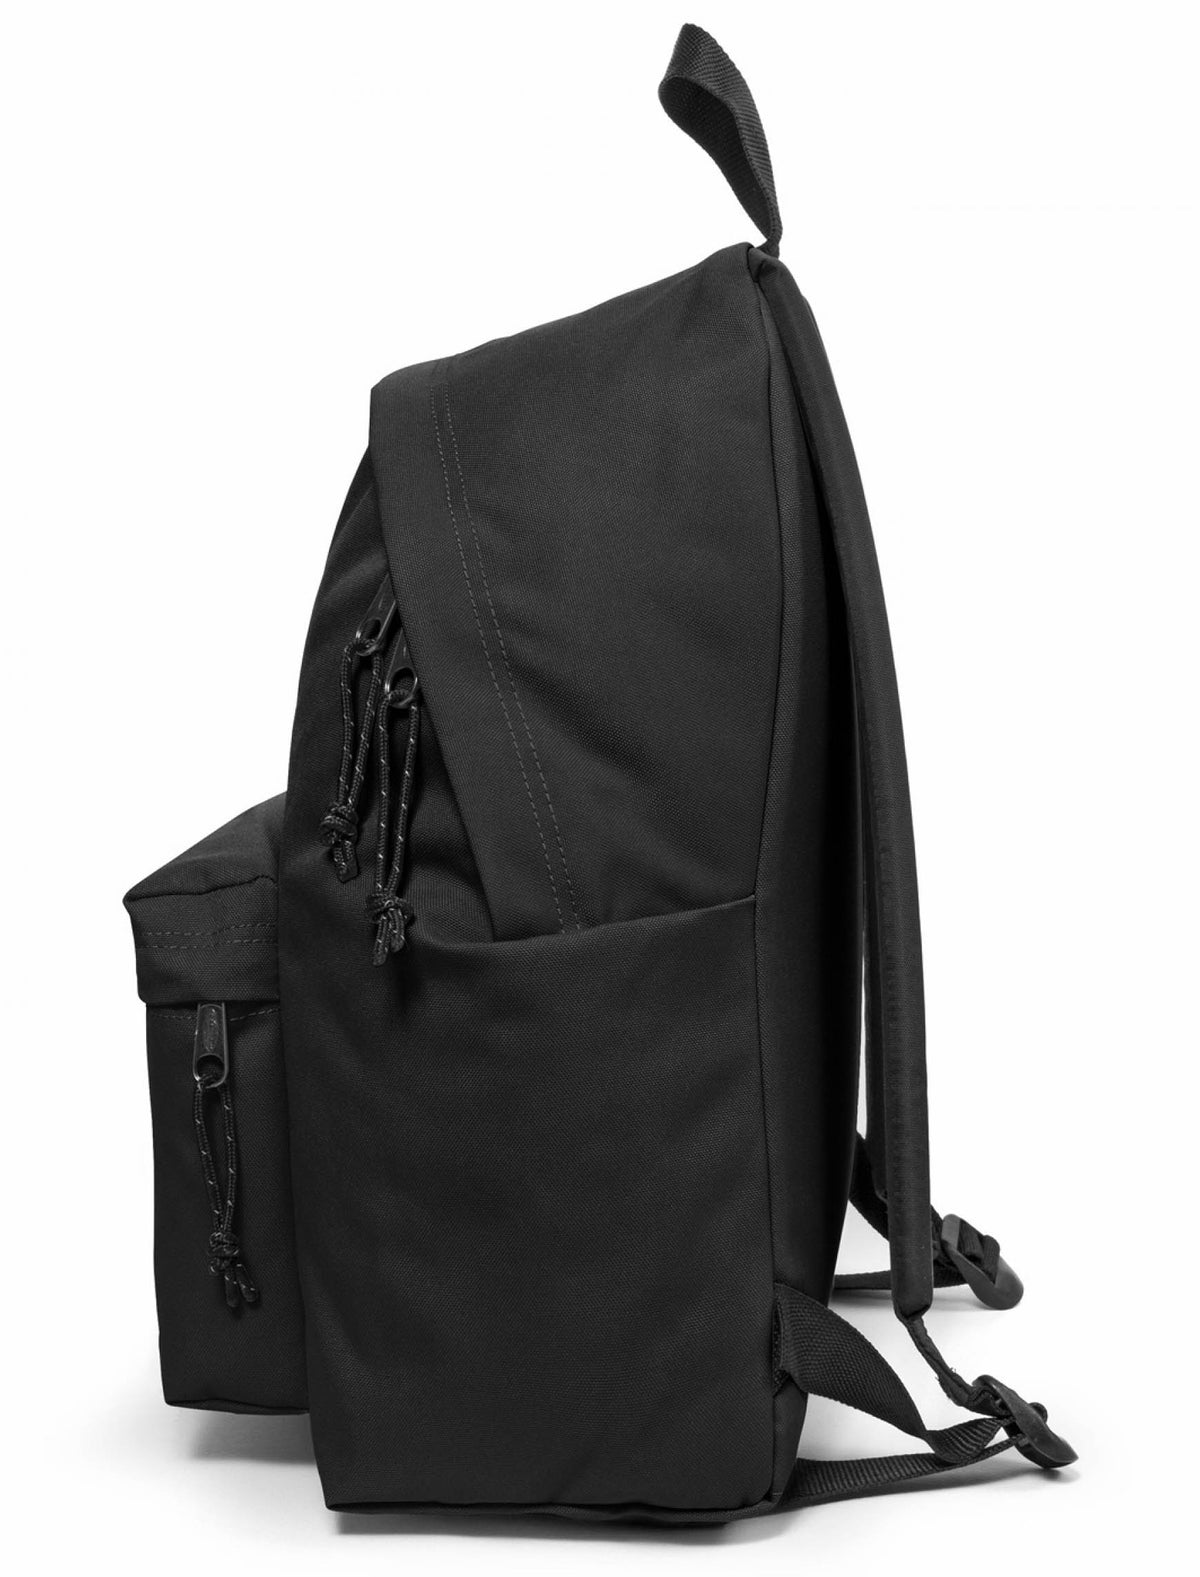 Eastpak Padded Pak'r Backpack - Black